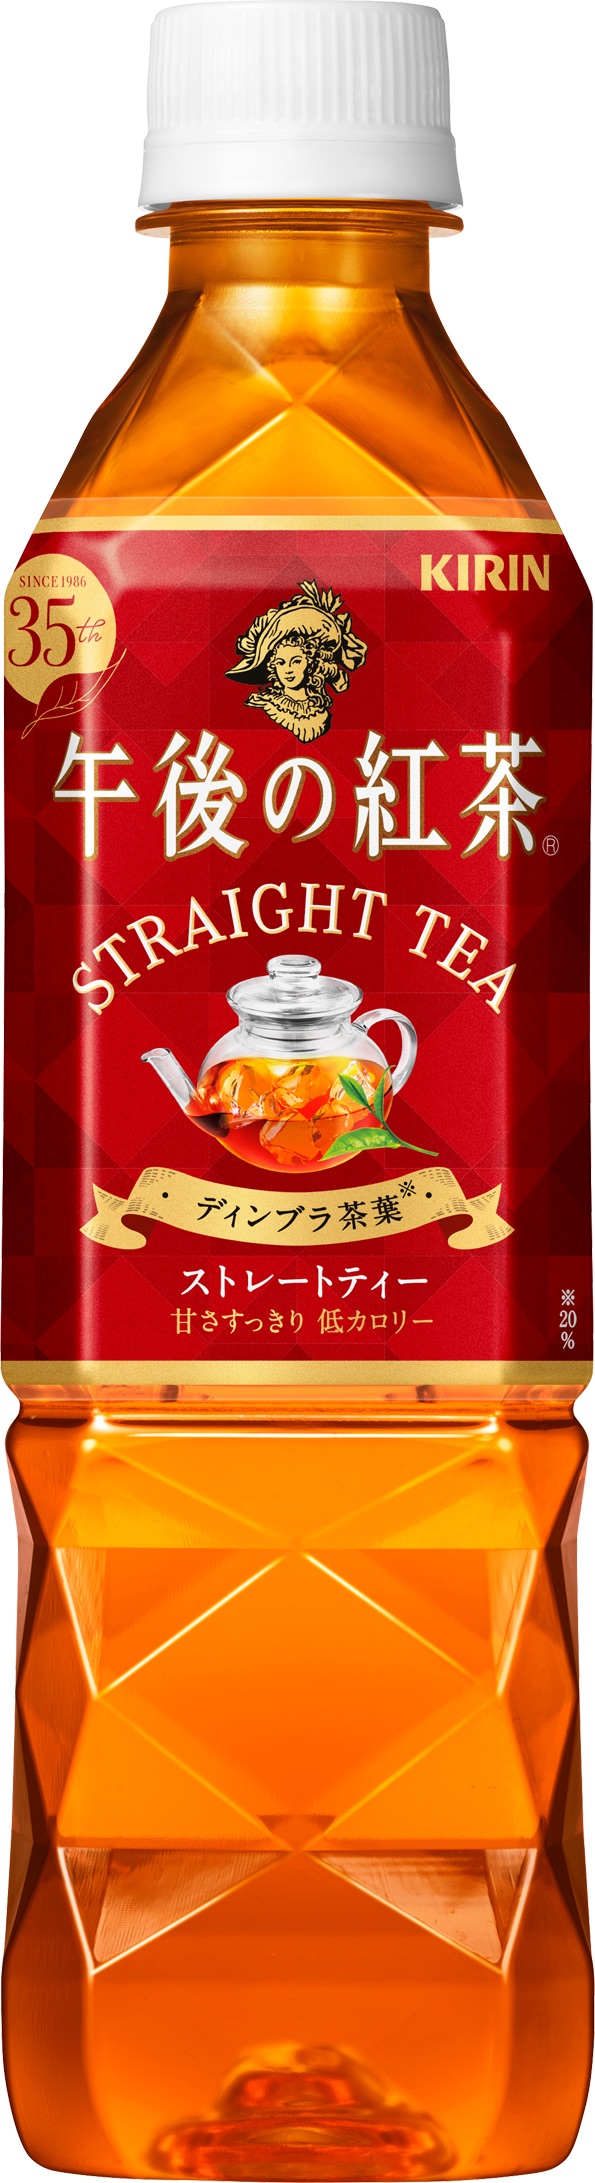 4月17日 土 神戸戦 キリンビバレッジ午後の紅茶35周年スペシャルデー として開催 湘南ベルマーレ公式サイト